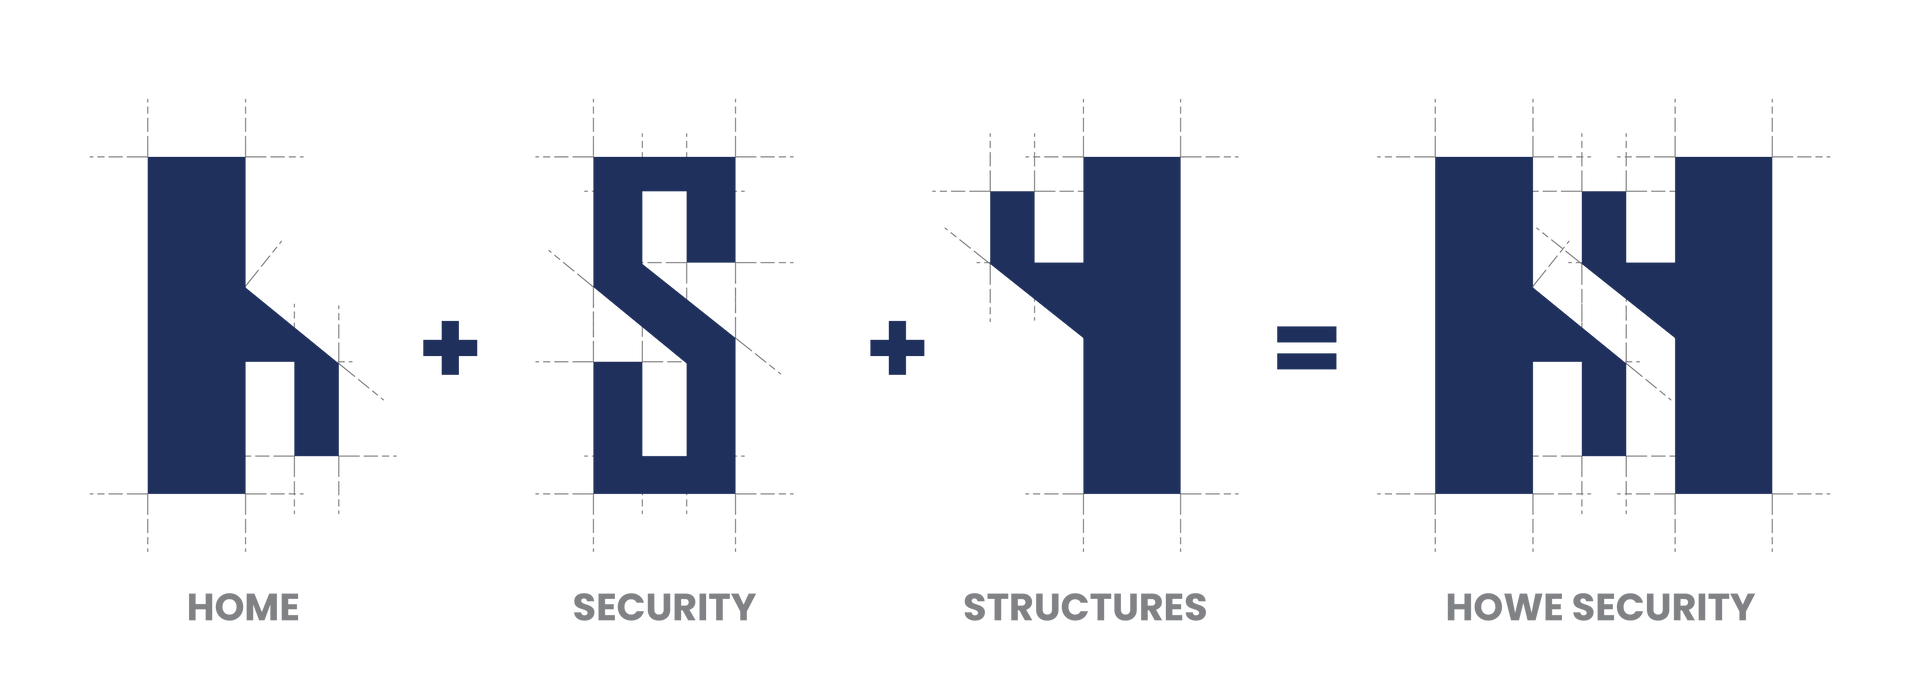 Howe Security Logo Breakdown